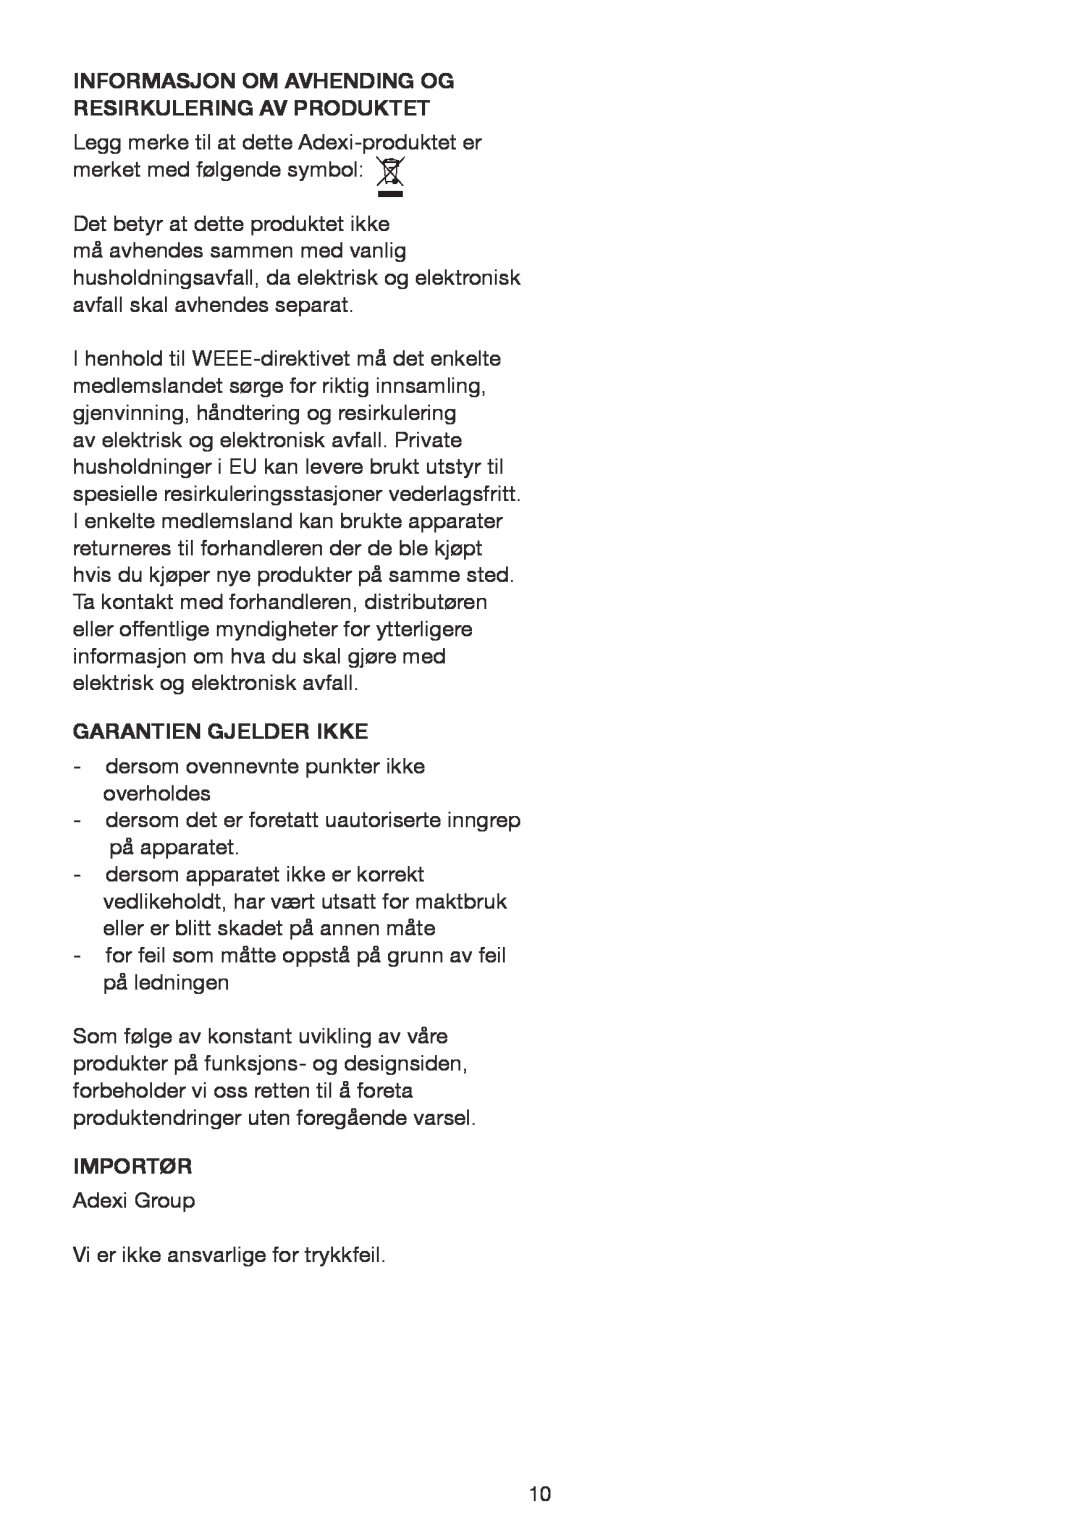 Melissa 243-061, 243-060 manual Informasjon Om Avhending Og Resirkulering Av Produktet, Garantien Gjelder Ikke, Importør 